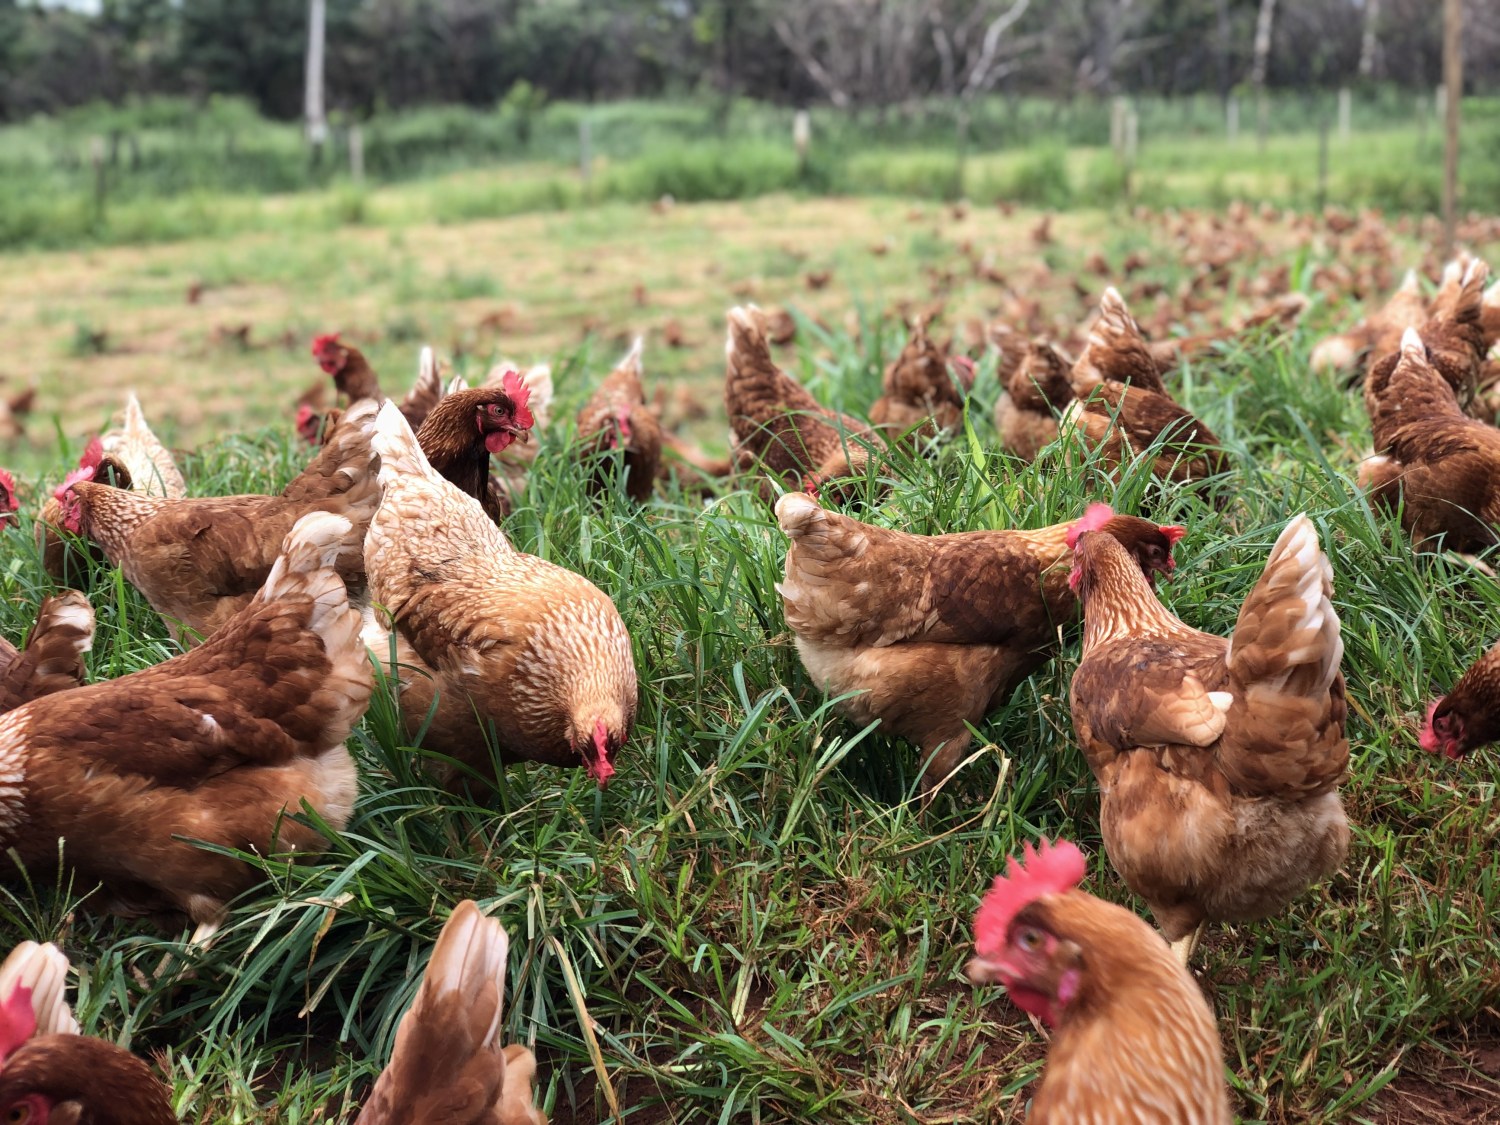 A iniciativa já conta com as certificações de bem-estar de galinhas livres de gaiolas, galinhas caipira e para produção livre de antibióticos